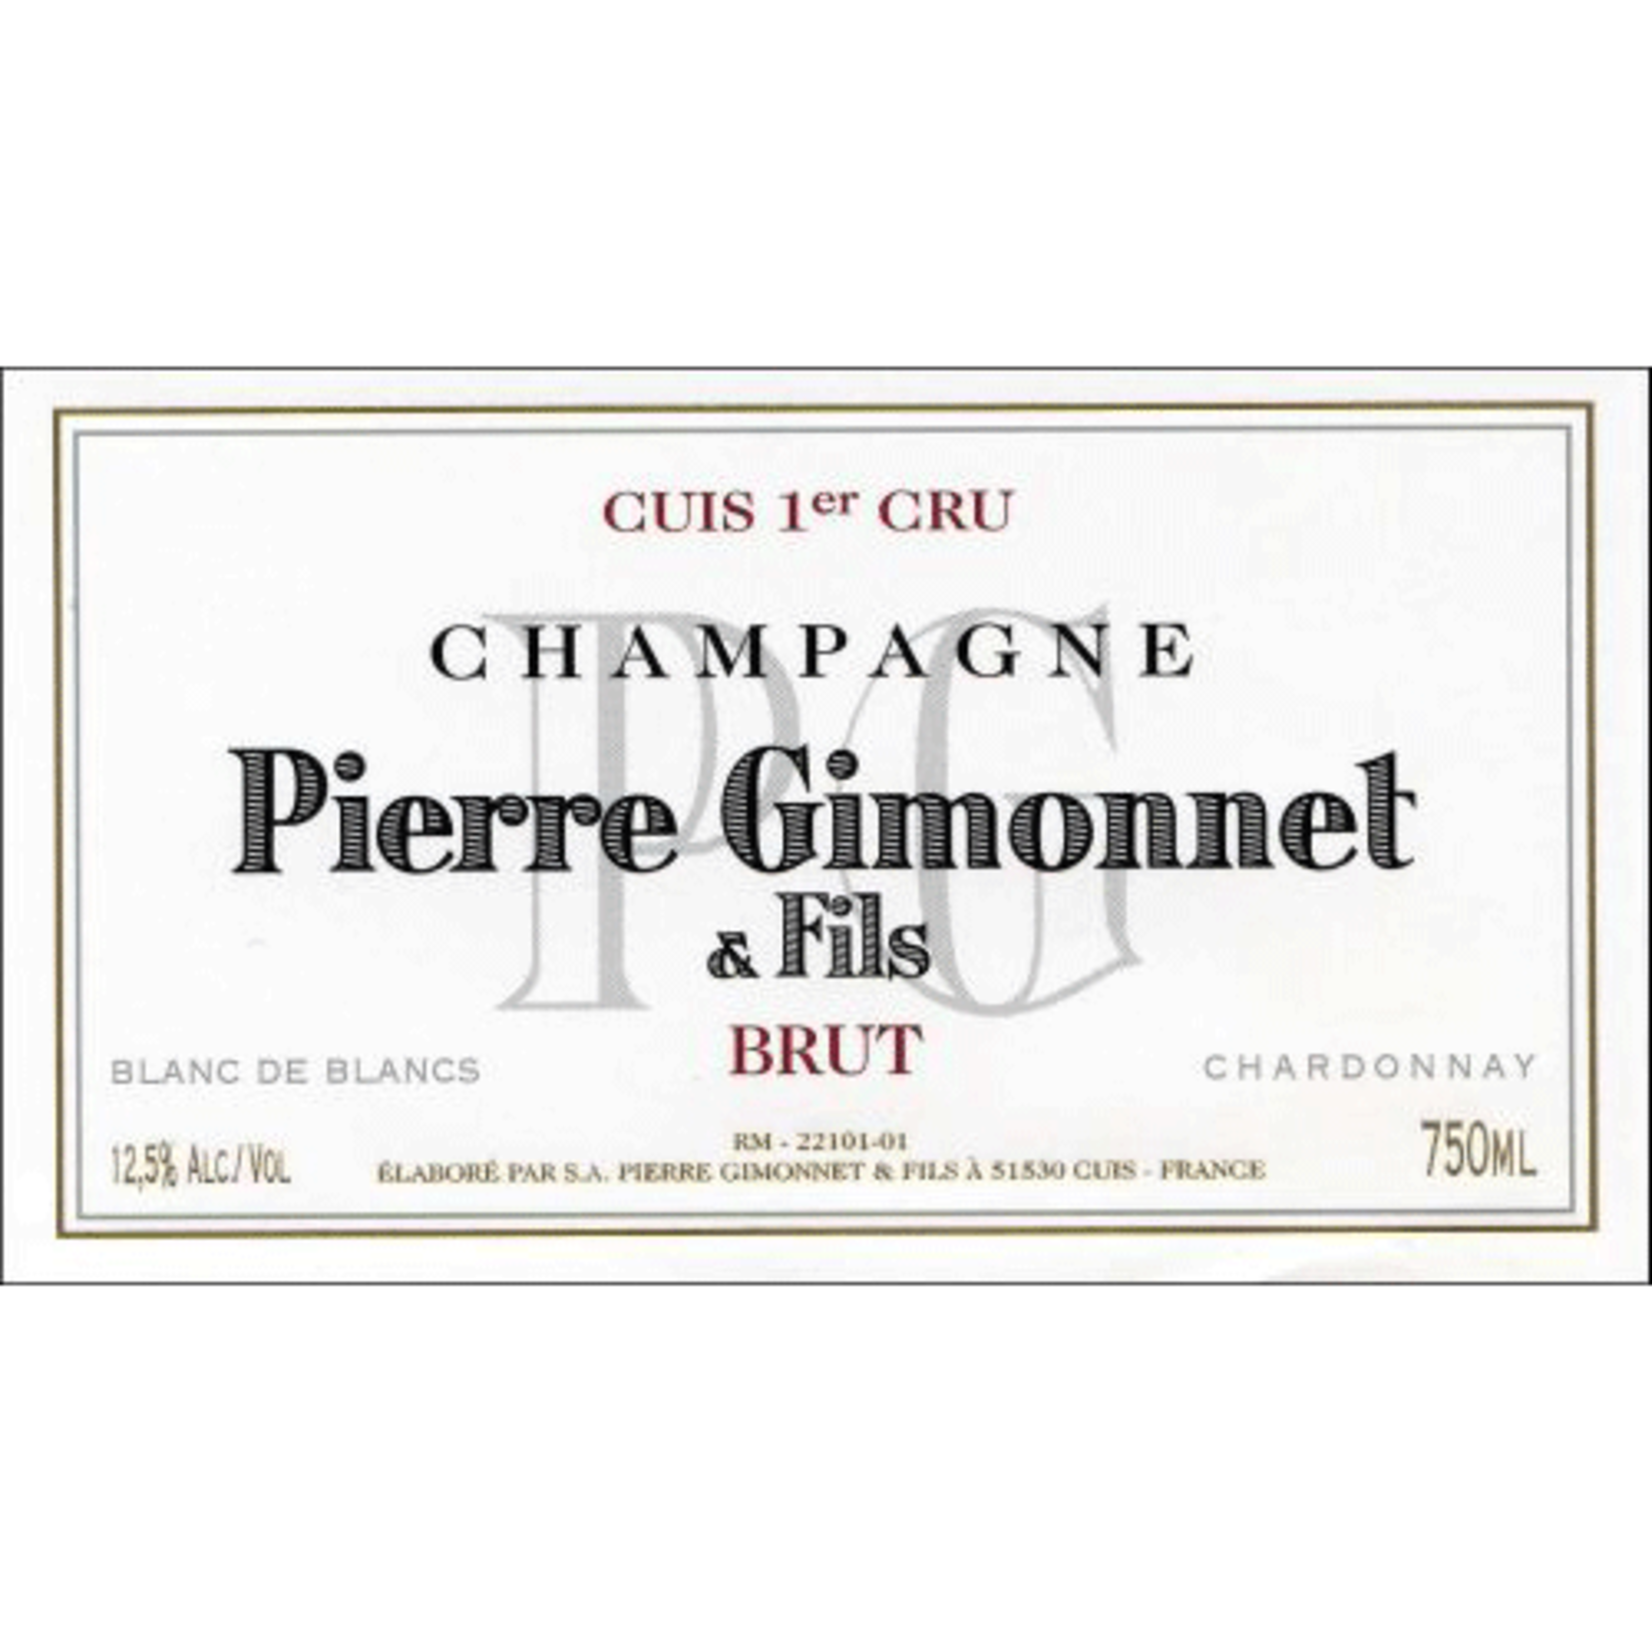 Sparkling Pierre Gimonnet & Fils Champagne Premier Cru Brut Blanc de Blancs 1.5L